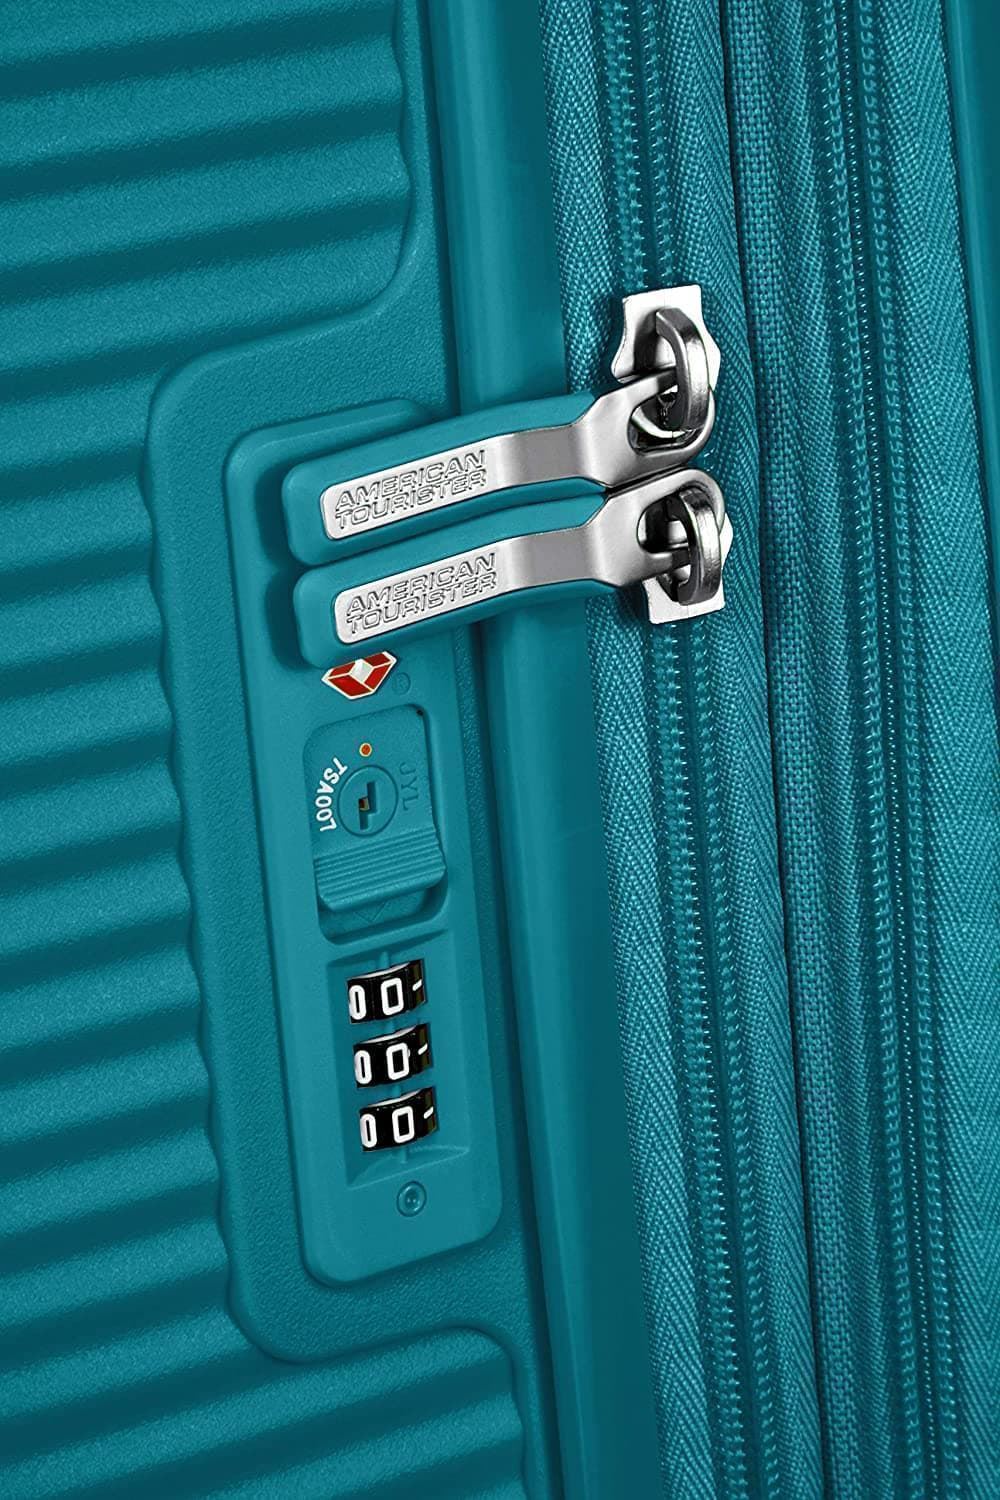 American Tourister Soundbox maleta cabina expandible Verde Jade 3 años de garantia - Imagen 7